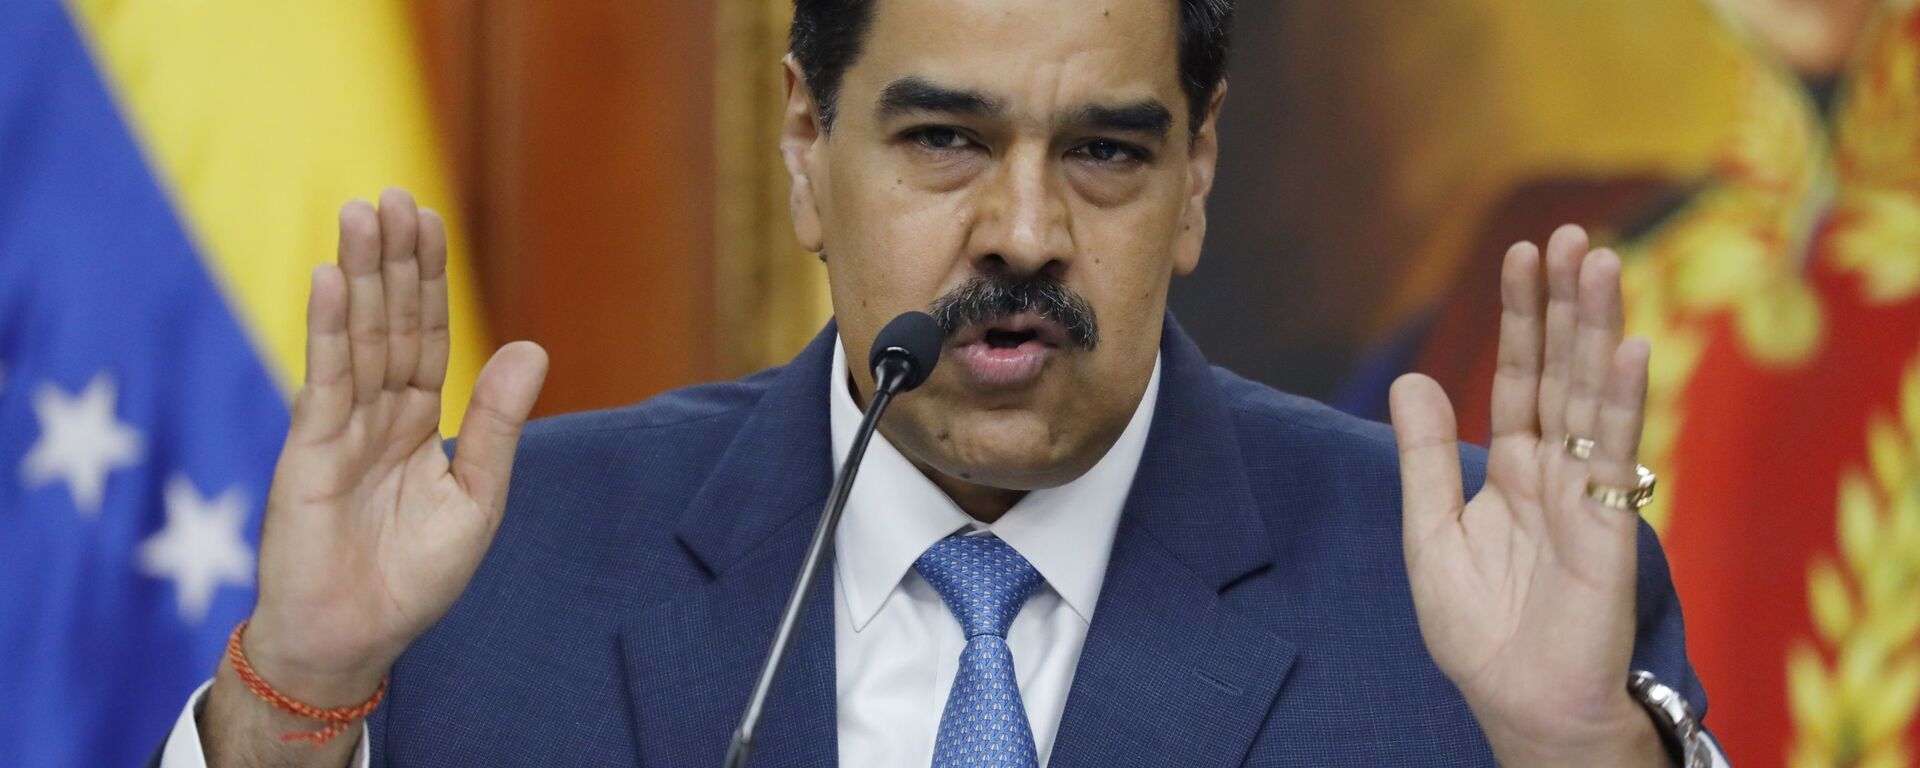 Nicolás Maduro, el presidente de Venezuela - Sputnik Mundo, 1920, 31.05.2021